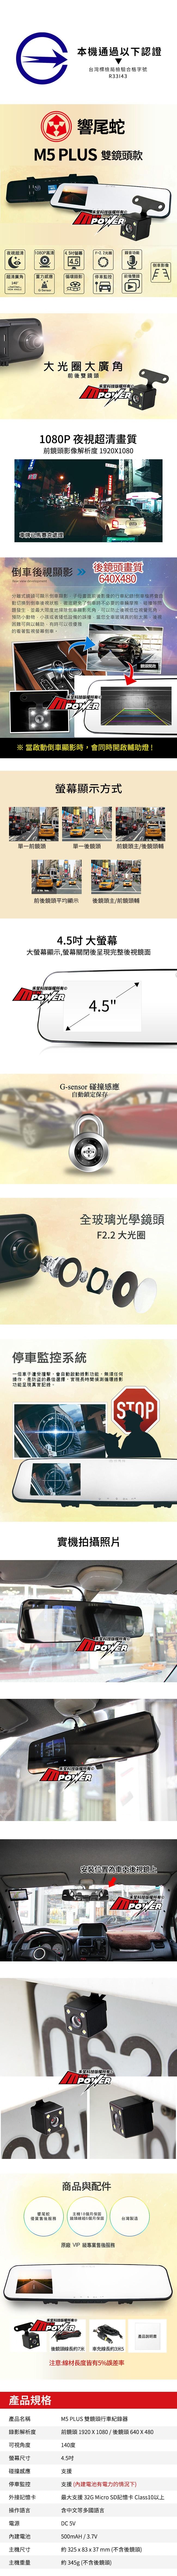 響尾蛇 M5 PLUS 雙鏡頭款 4.5吋大螢幕 後視鏡行車紀錄器-快